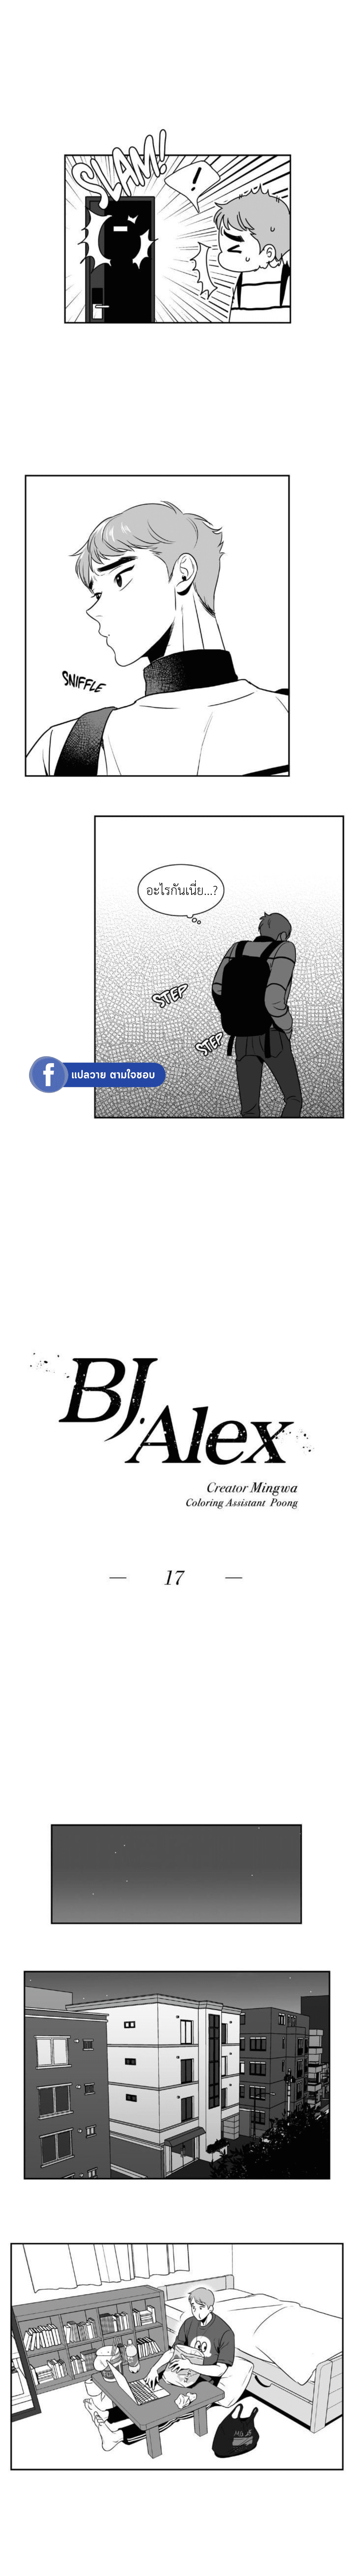 BJ Alex 17 3